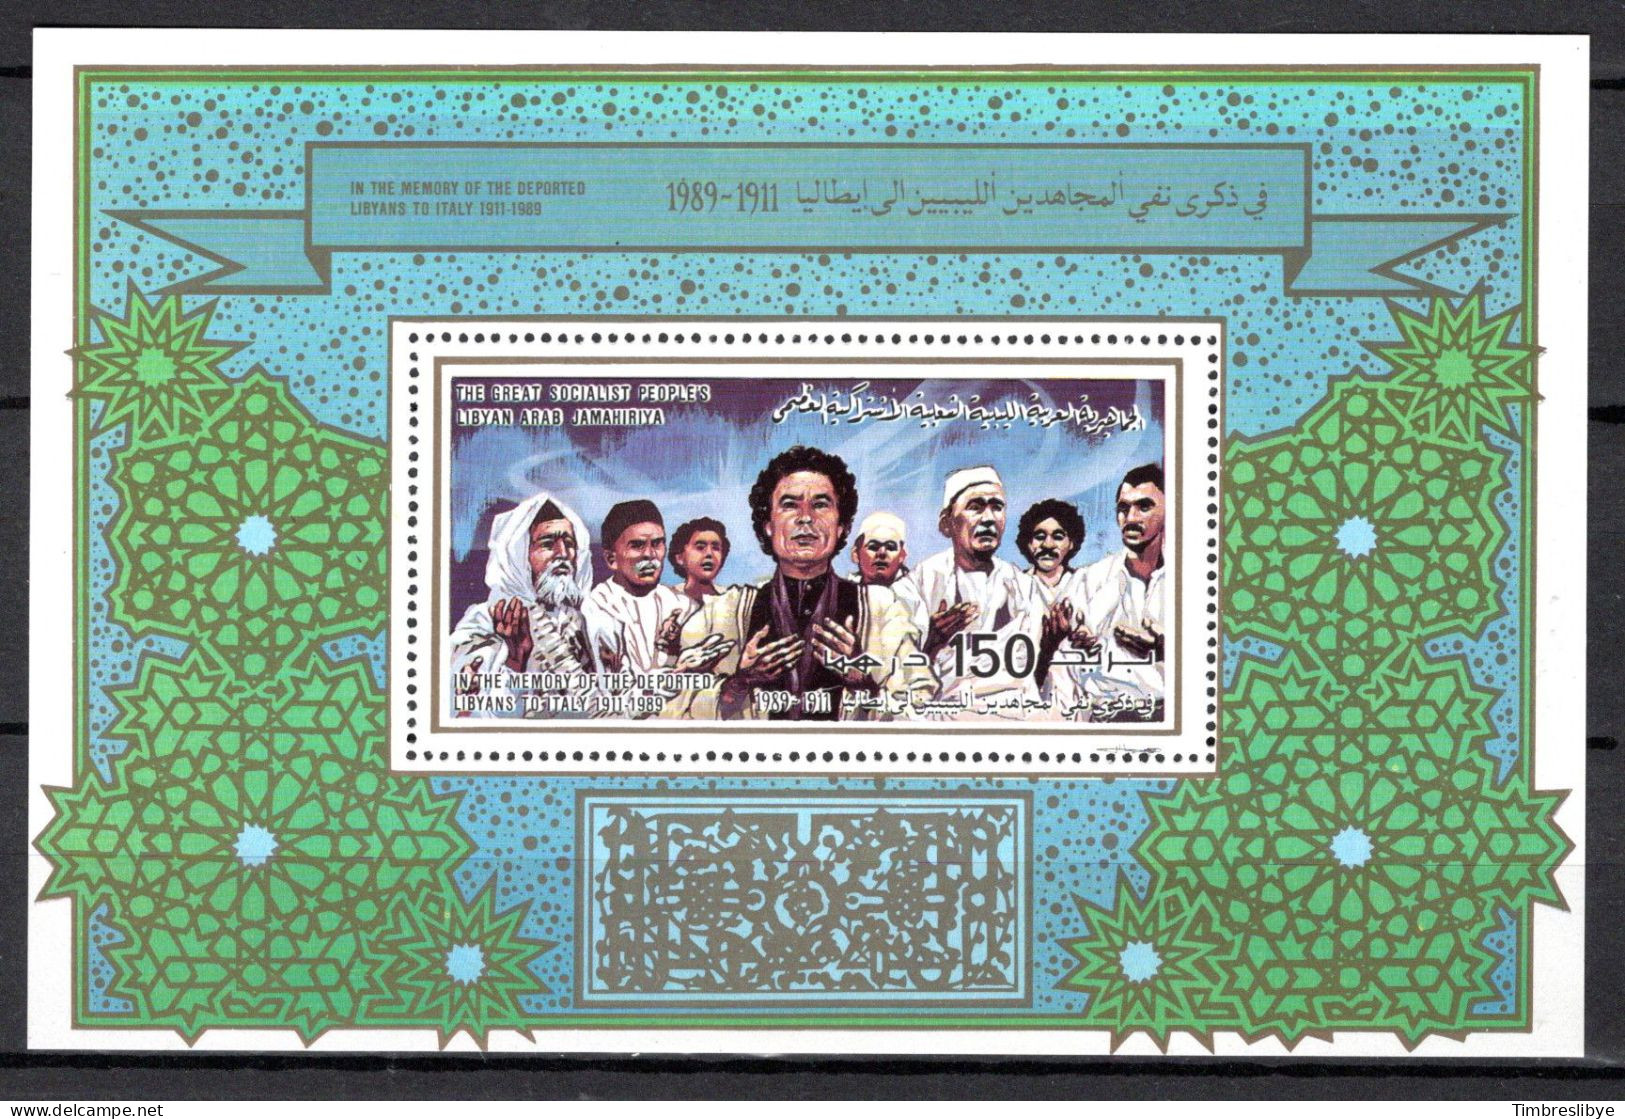 LIBYA 26.10.1989; Journée De Commémoration Des Déportés; Michel-Bloc-N° 119A; MNH, Neuf ** - Libye